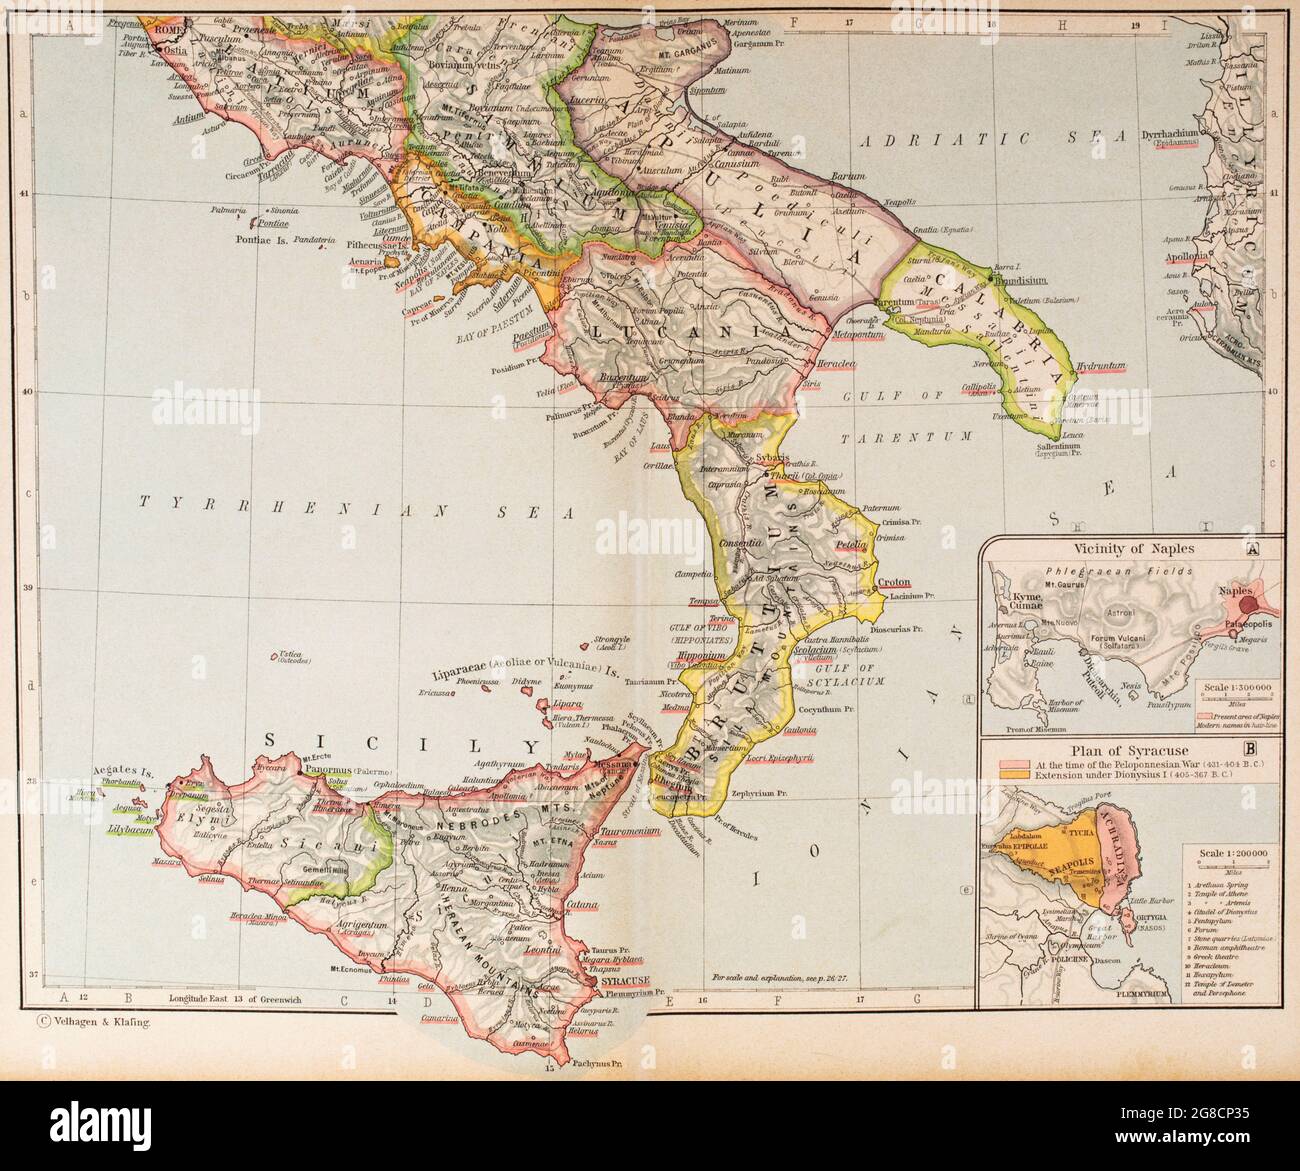 Mappa dell'Italia antica, parte meridionale. Da Atlante storico, pubblicato nel 1923. Foto Stock